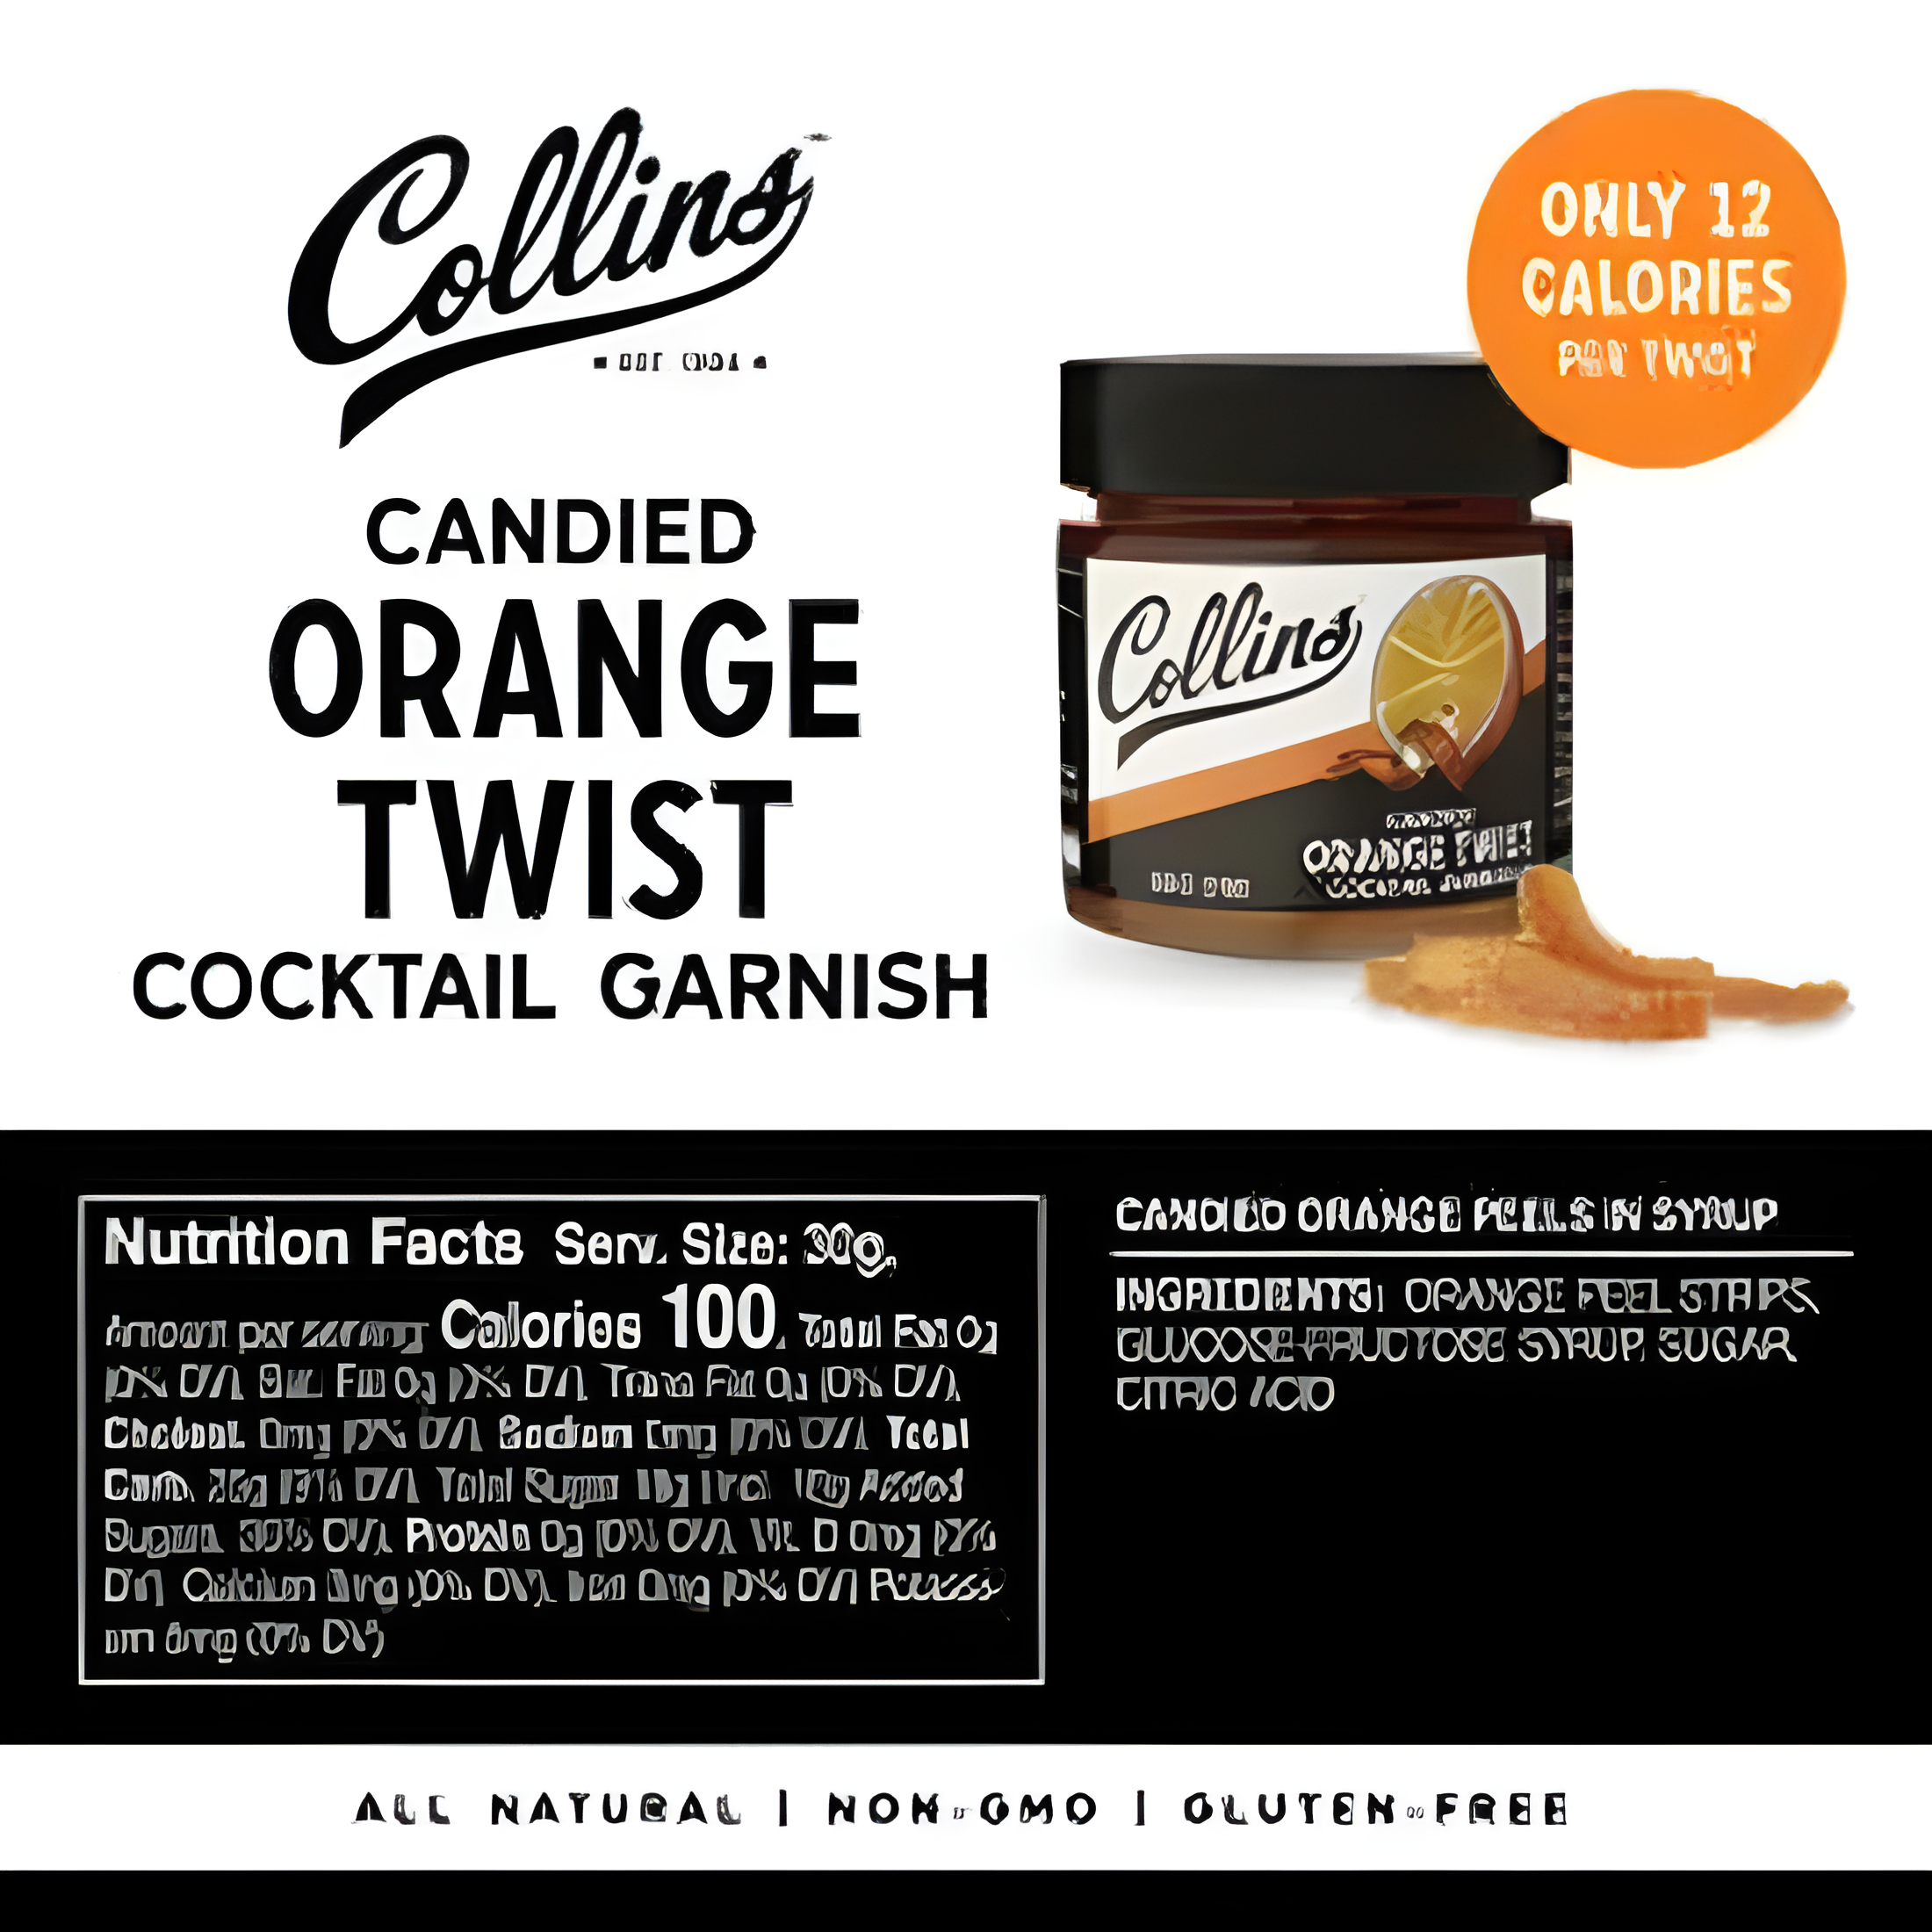 candied orange twists are non-gmo and gluten free